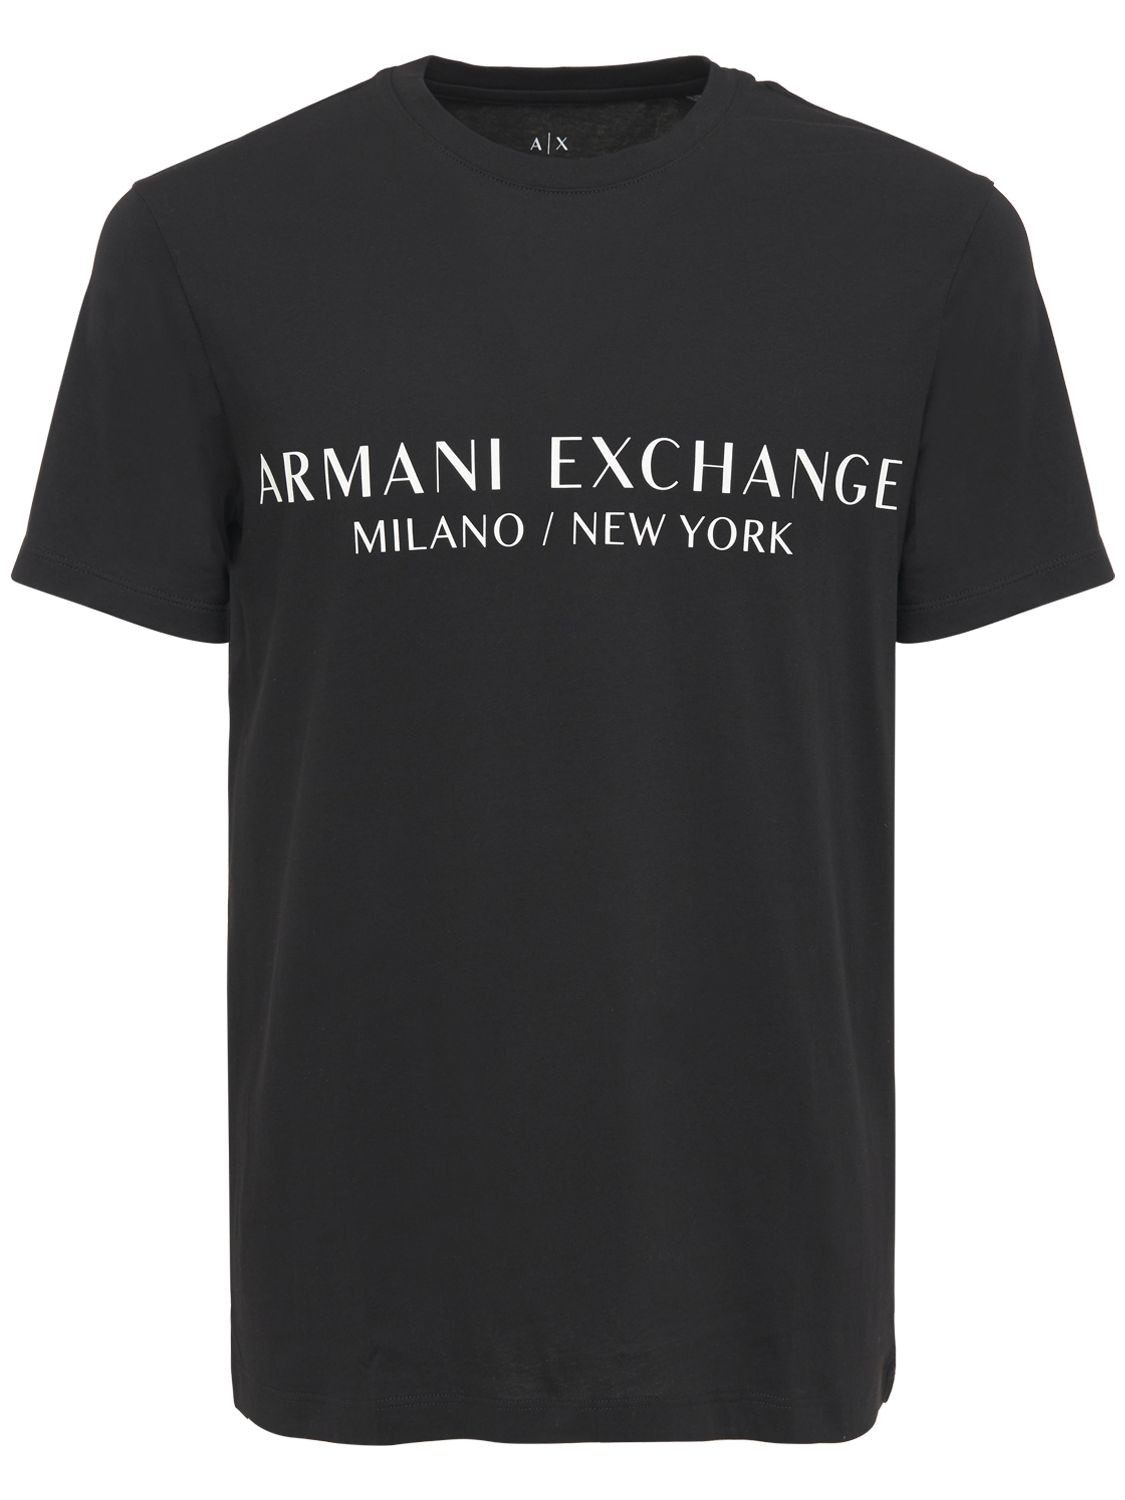 ARMANI EXCHANGE LOGO印图纯棉圆领T恤,73IHLF015-MTIWMA2